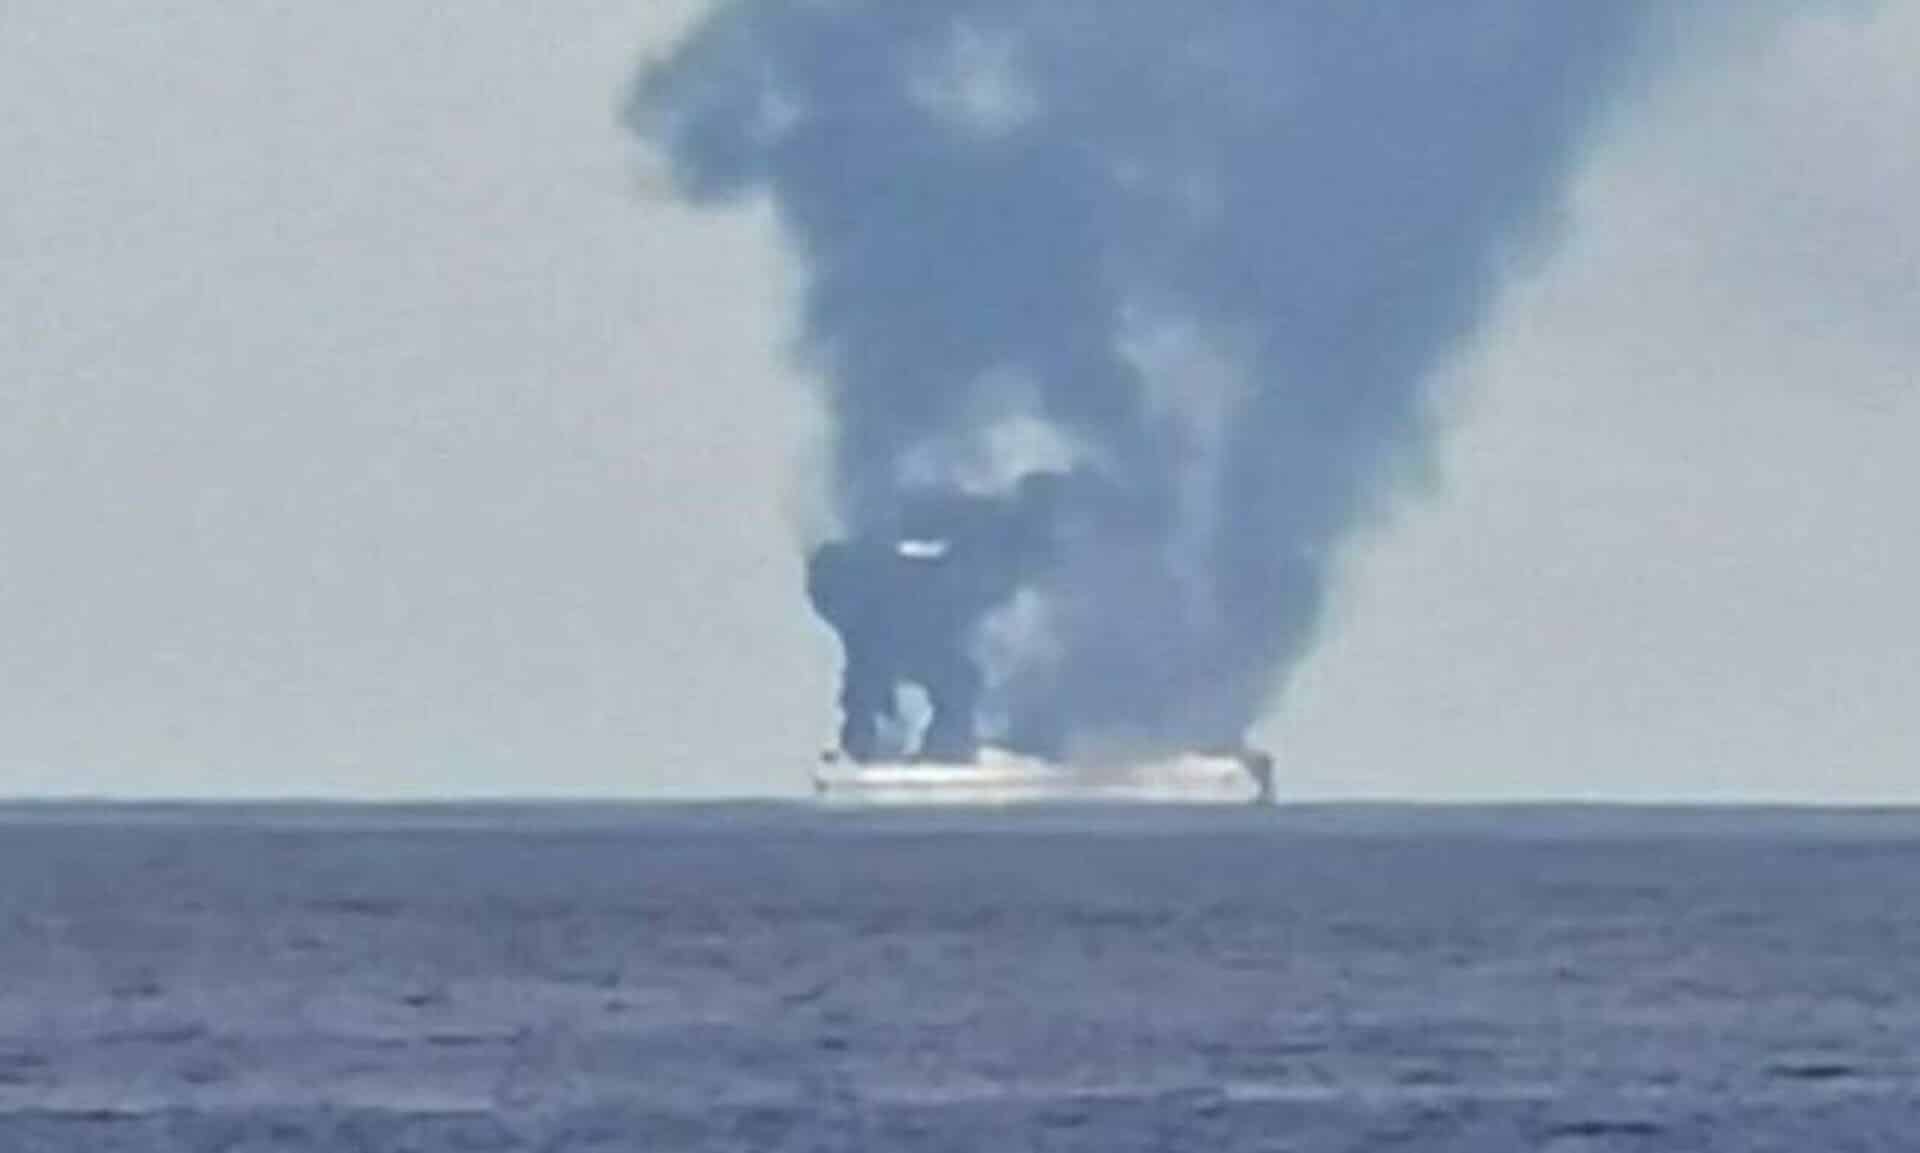 Πειραιάς: Πυρκαγιά σε φορτηγό πλοίο στις δεξαμενές Βασιλειάδη – Σβήστηκε από το πλήρωμα